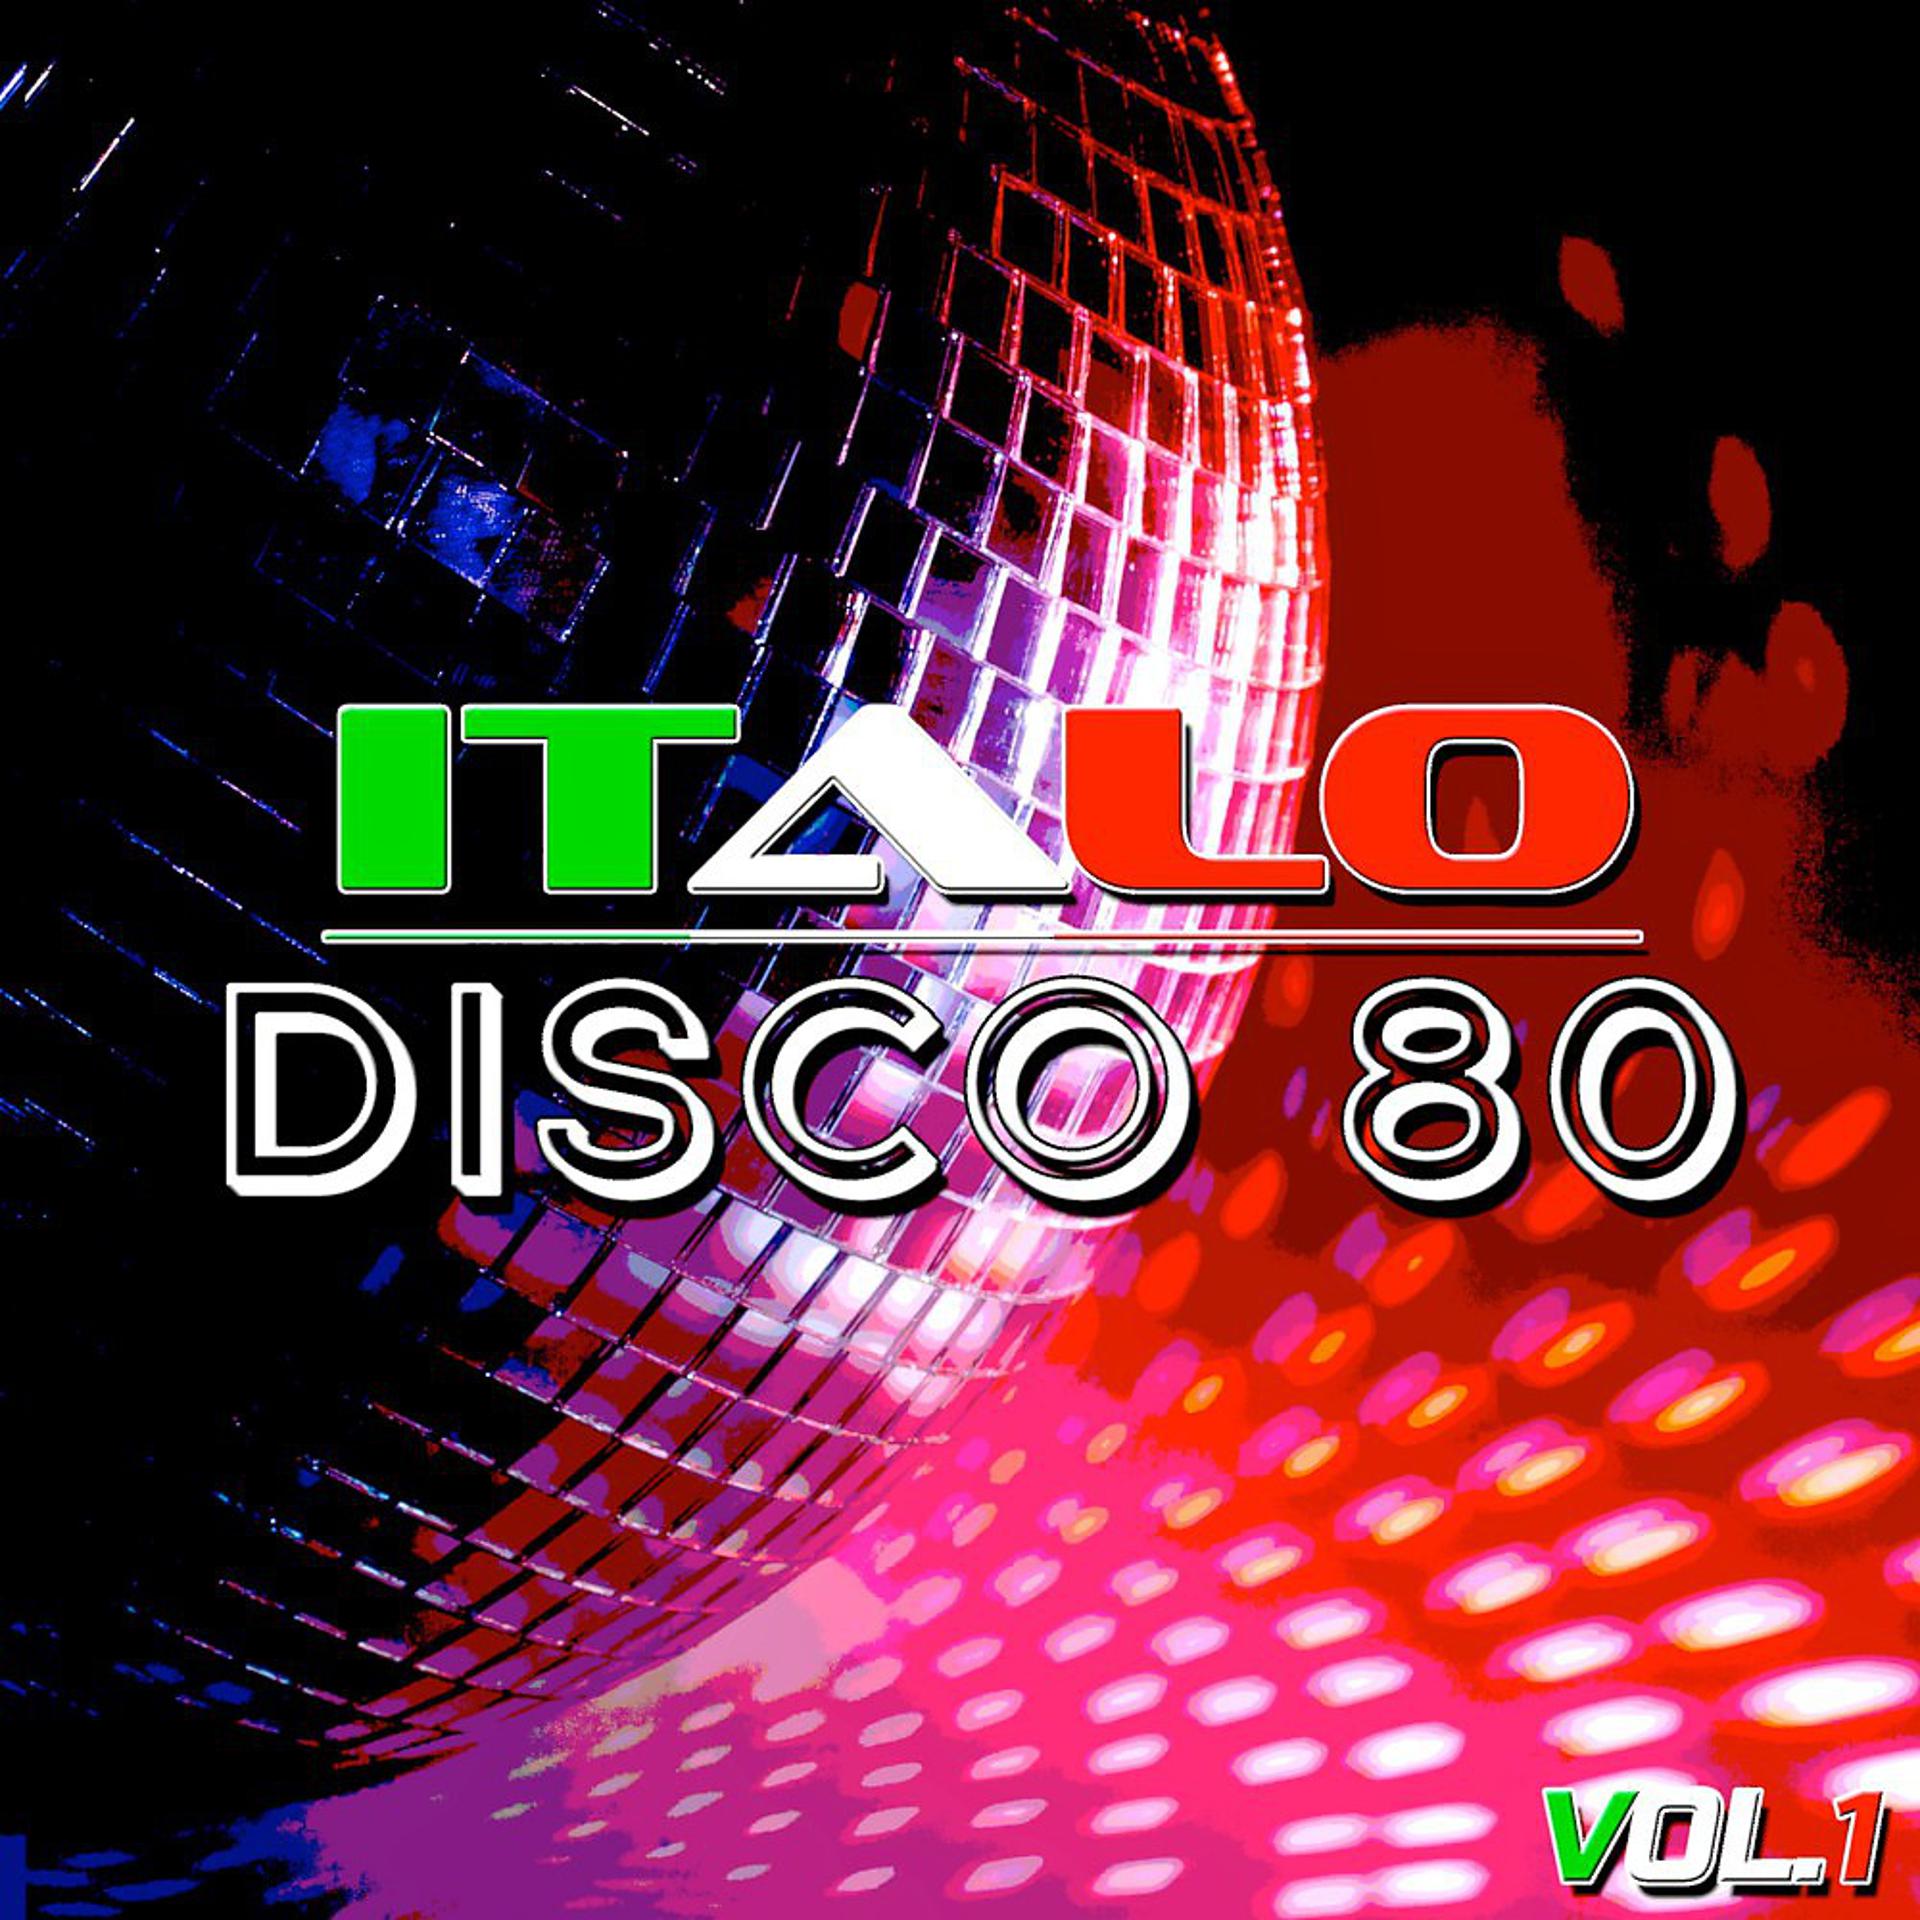 Итало диско. Итальянское диско. Итало диско 80. Итало диско итало диско.